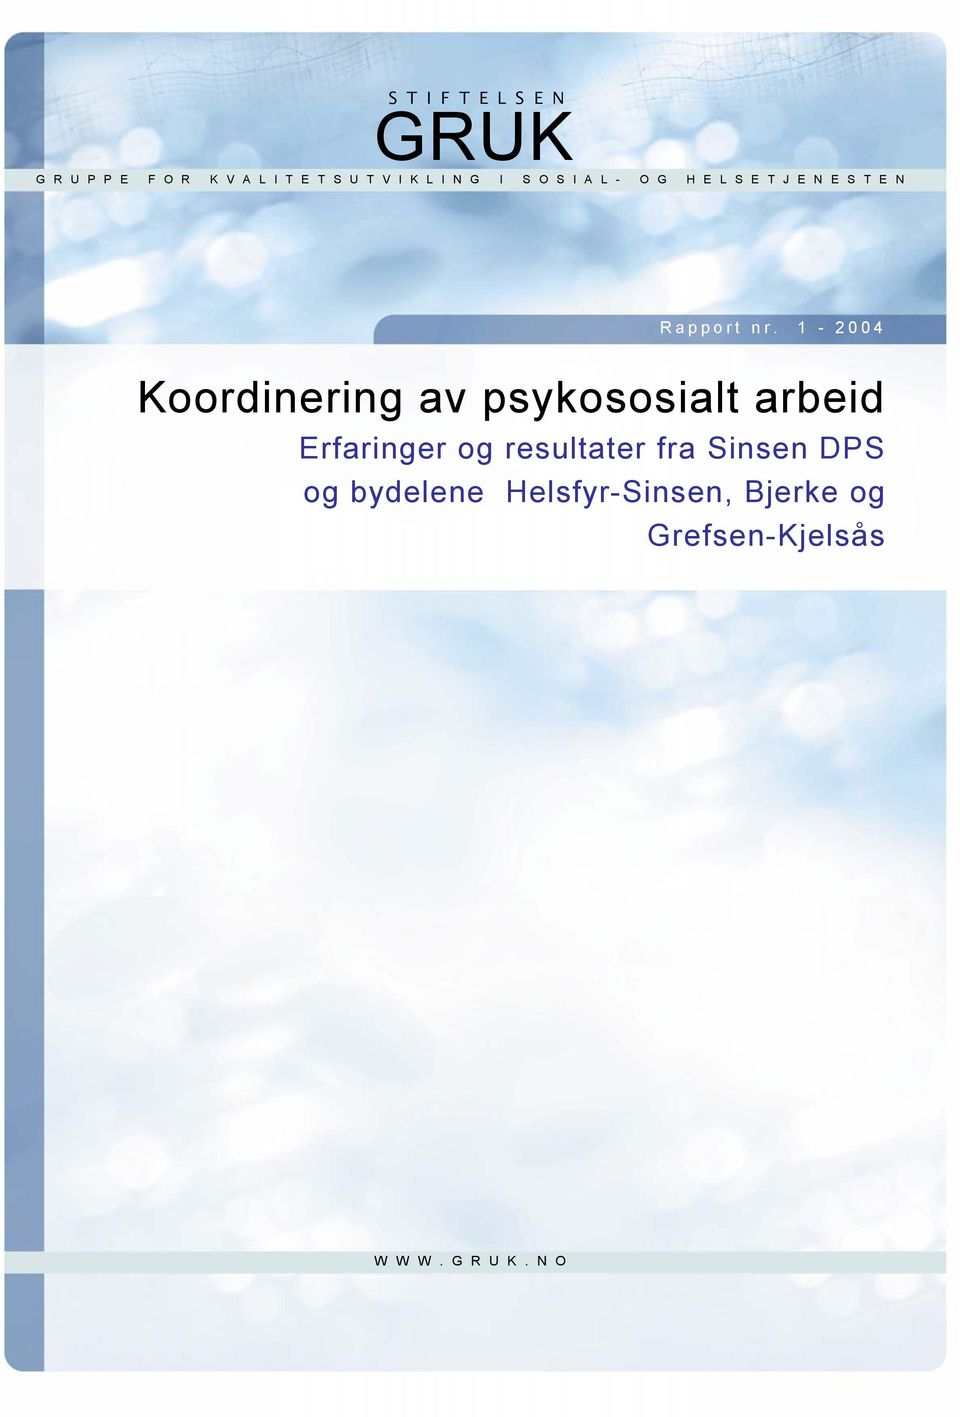 1-2004 Koordinering av psykososialt arbeid Erfaringer og resultater fra